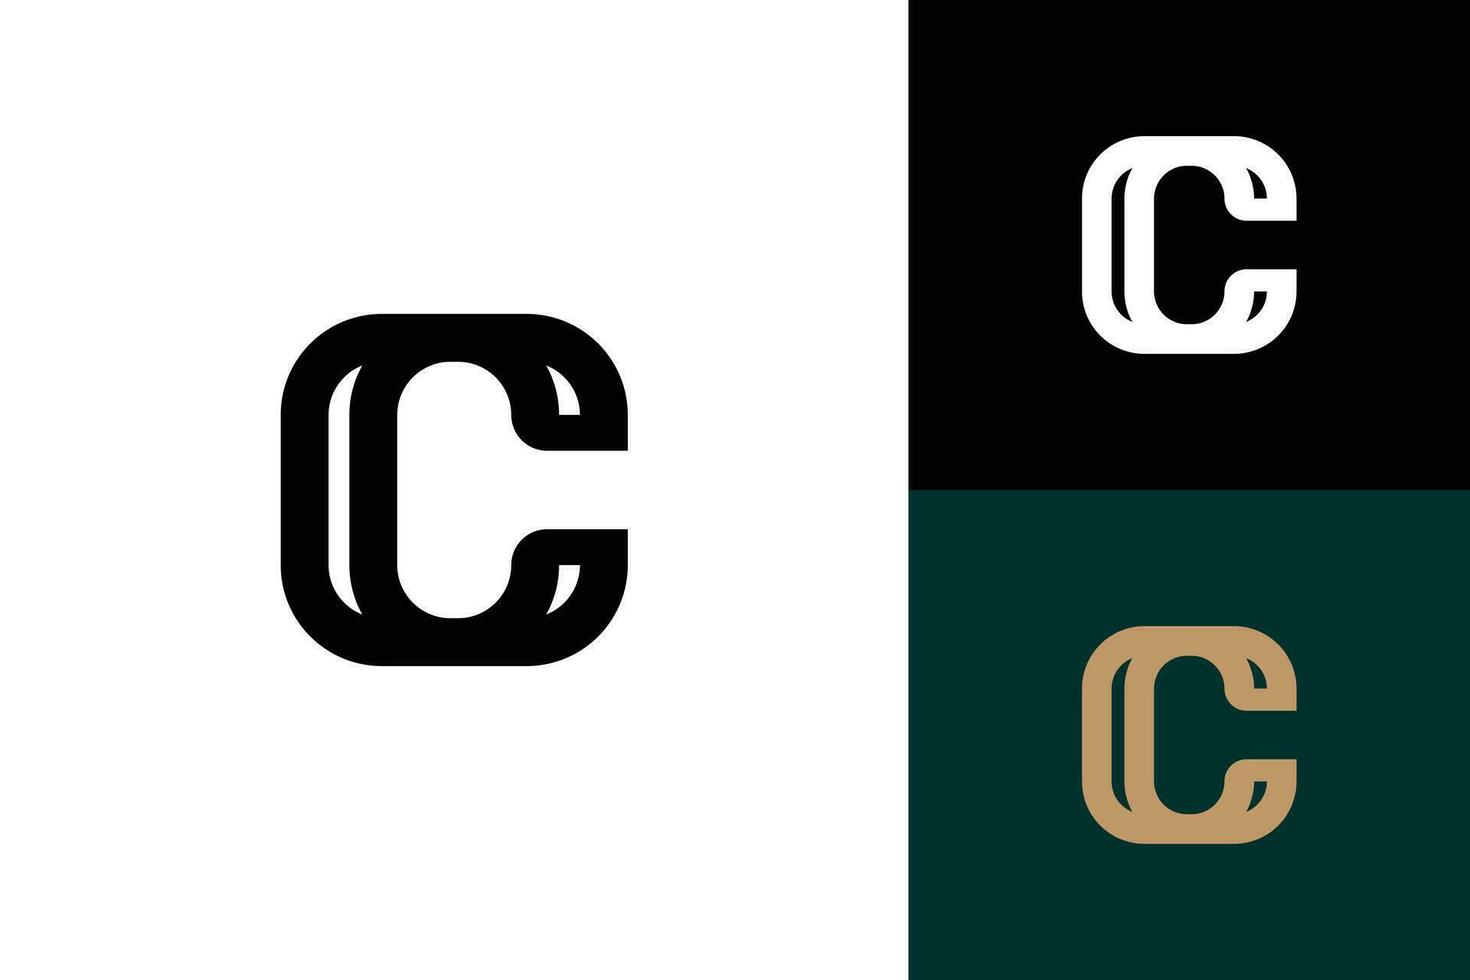 letter c monogram vector logo design